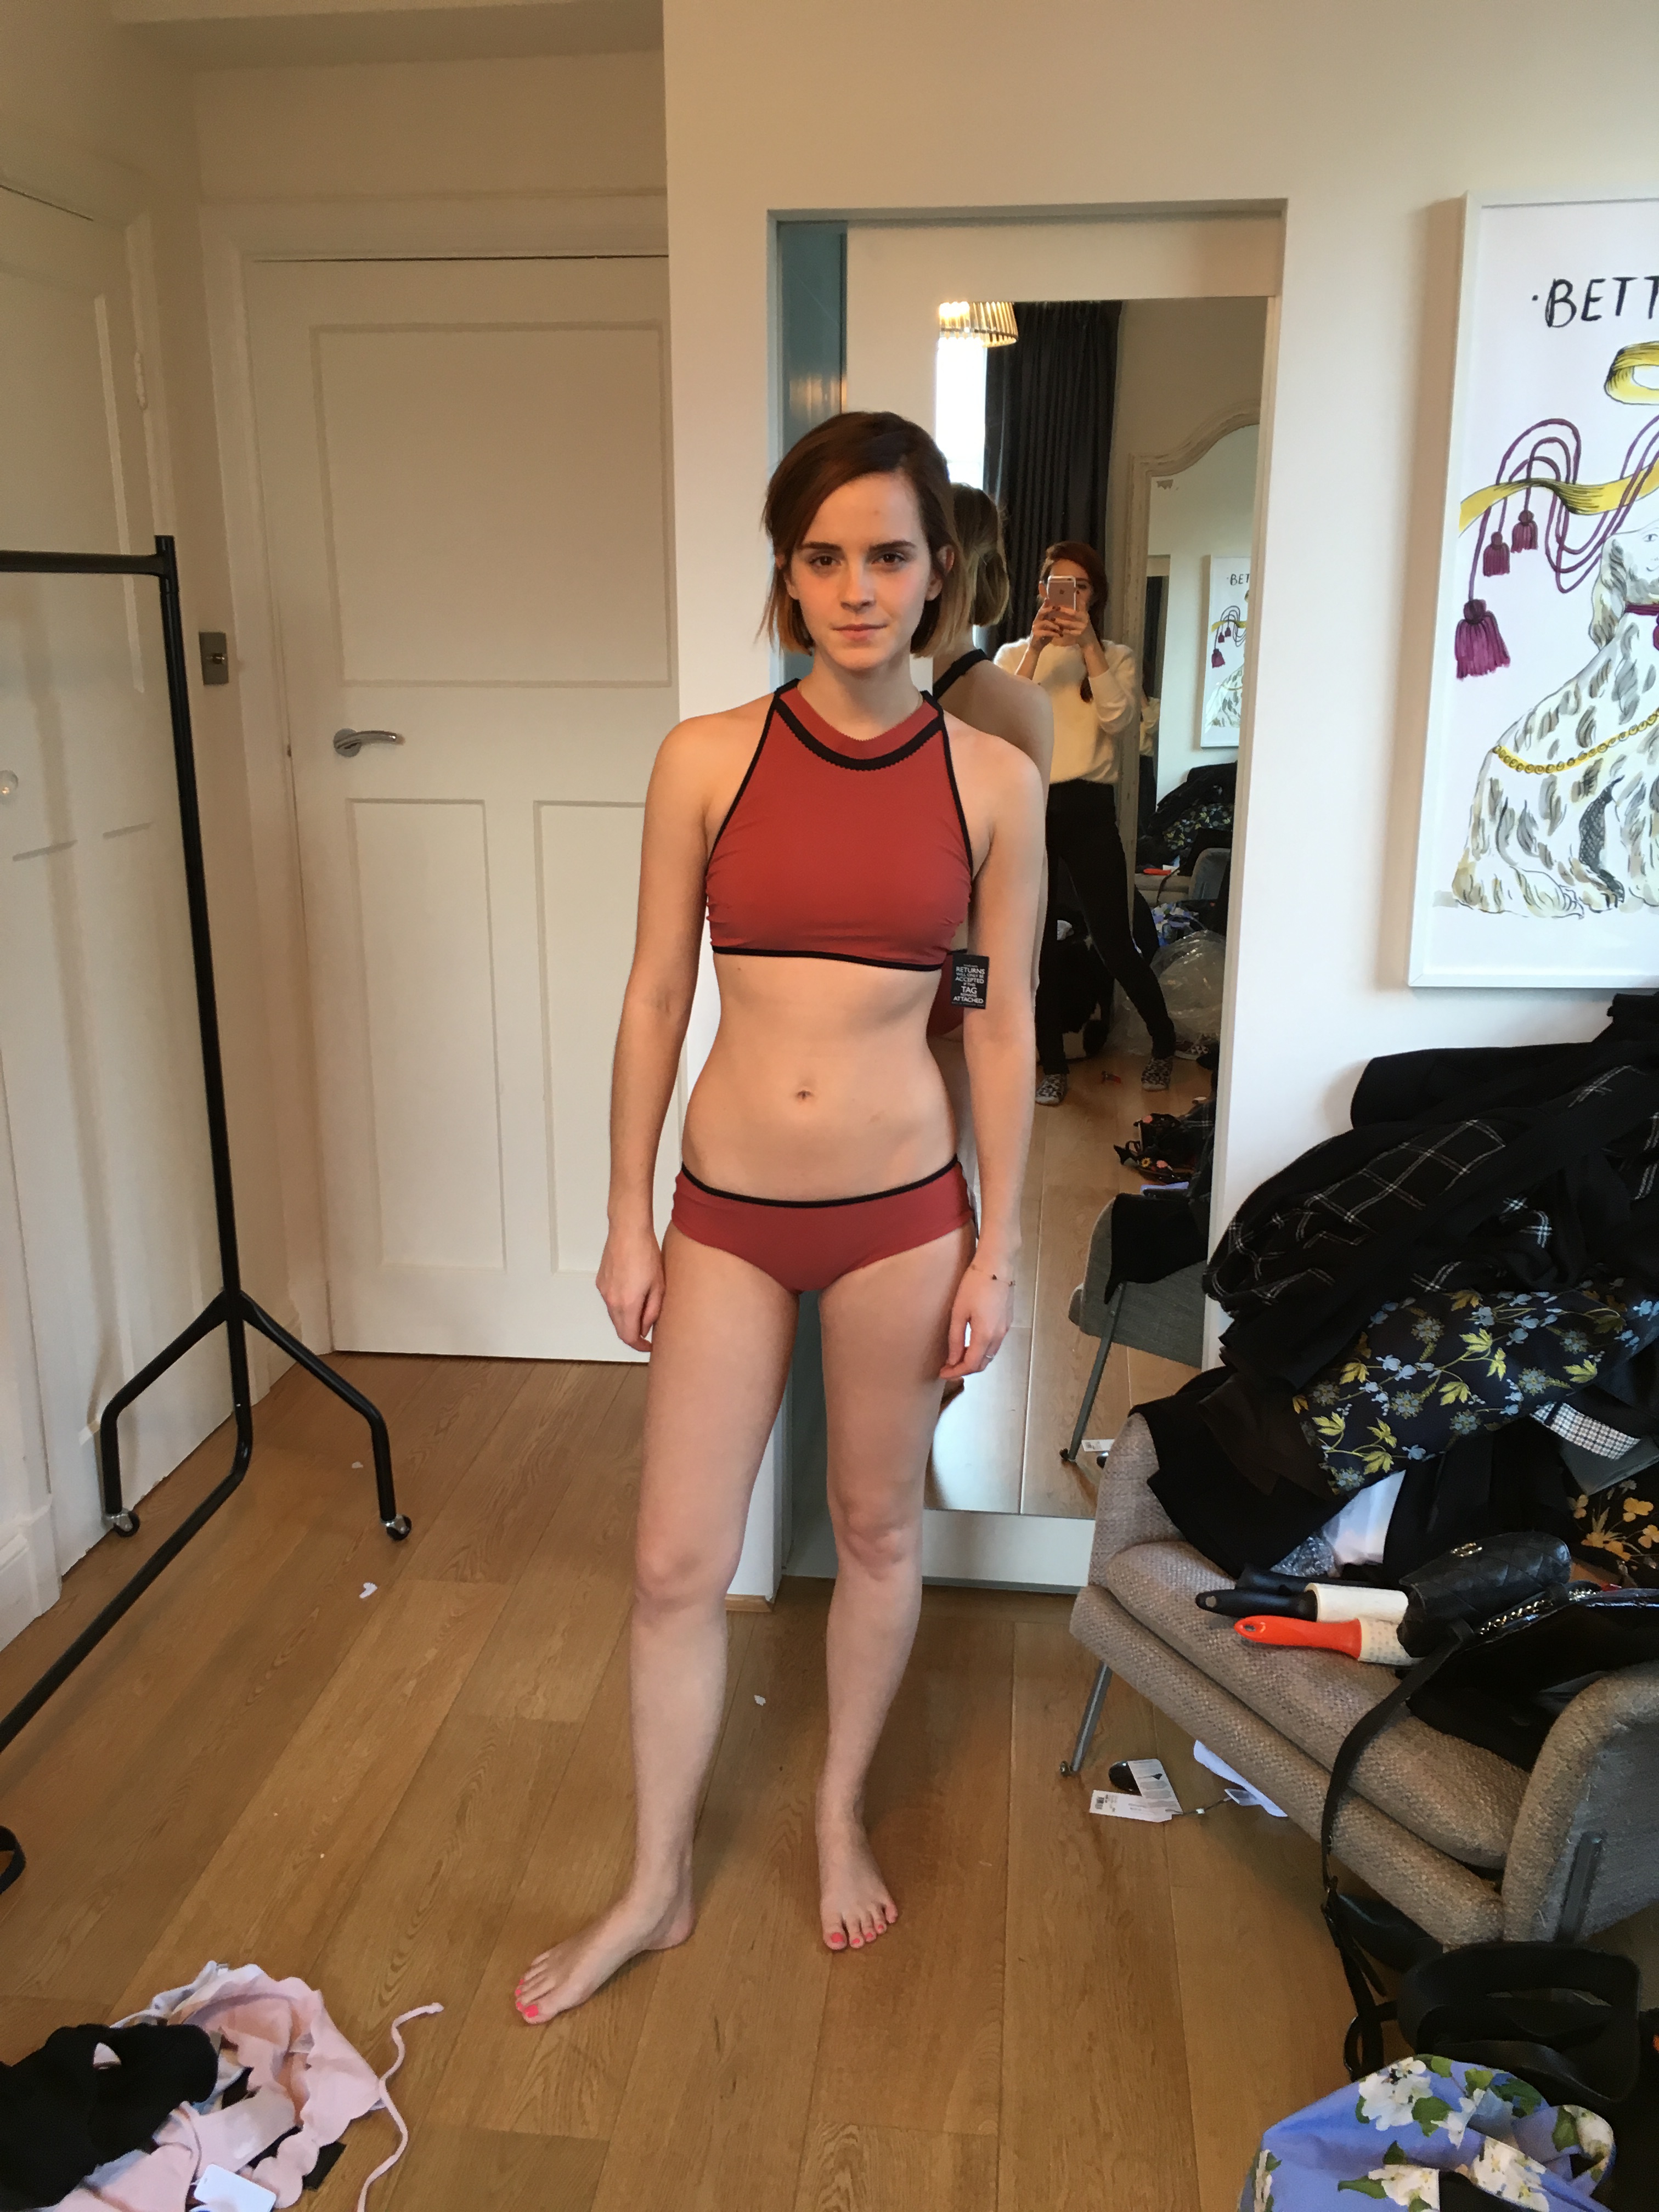 Emma Watson nude stomach image